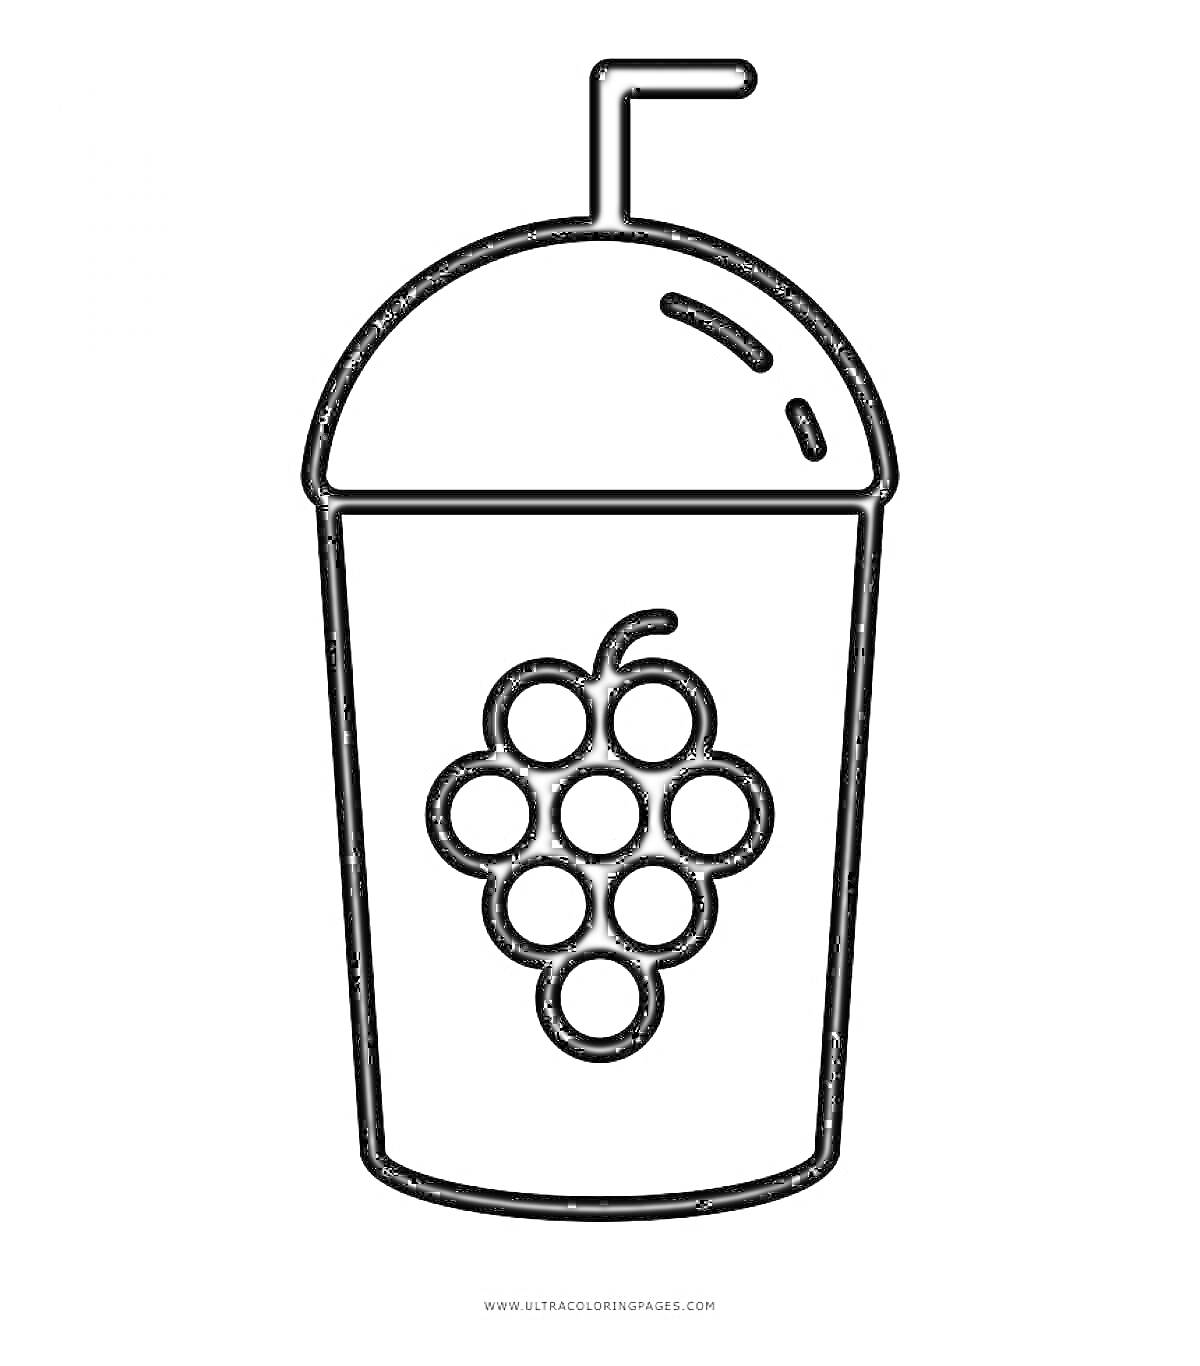 Раскраска Стакан с соком и трубочкой, гроздь винограда на стакане